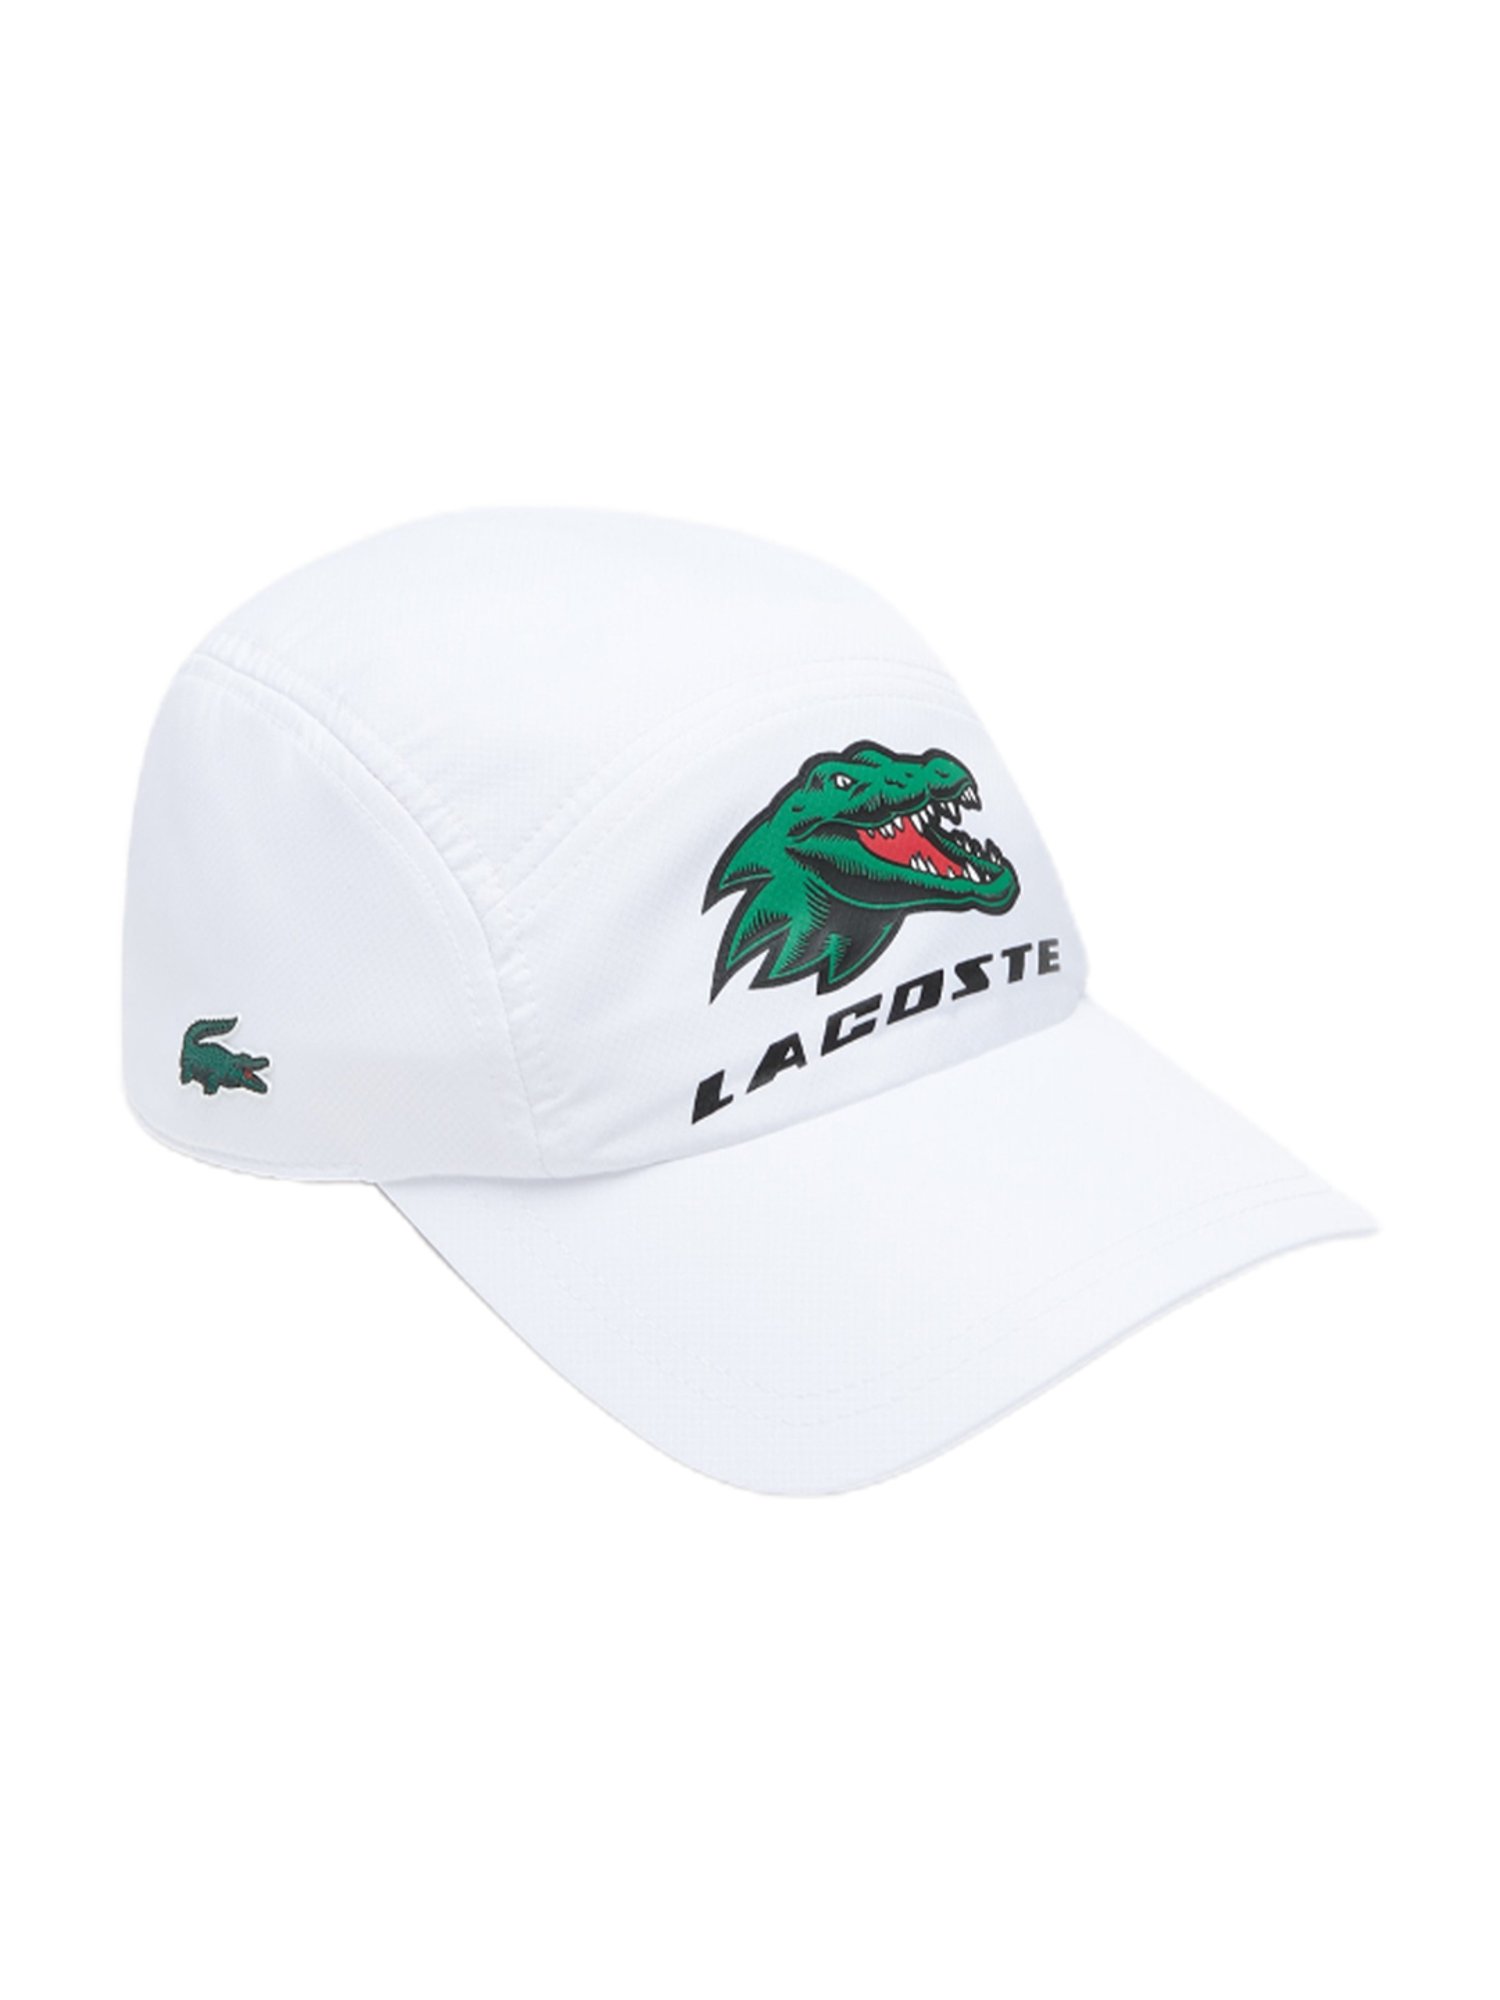 Buy Lacoste White Sport Exclusive Crocodile Baseball Cap at Best Price @  Tata CLiQ